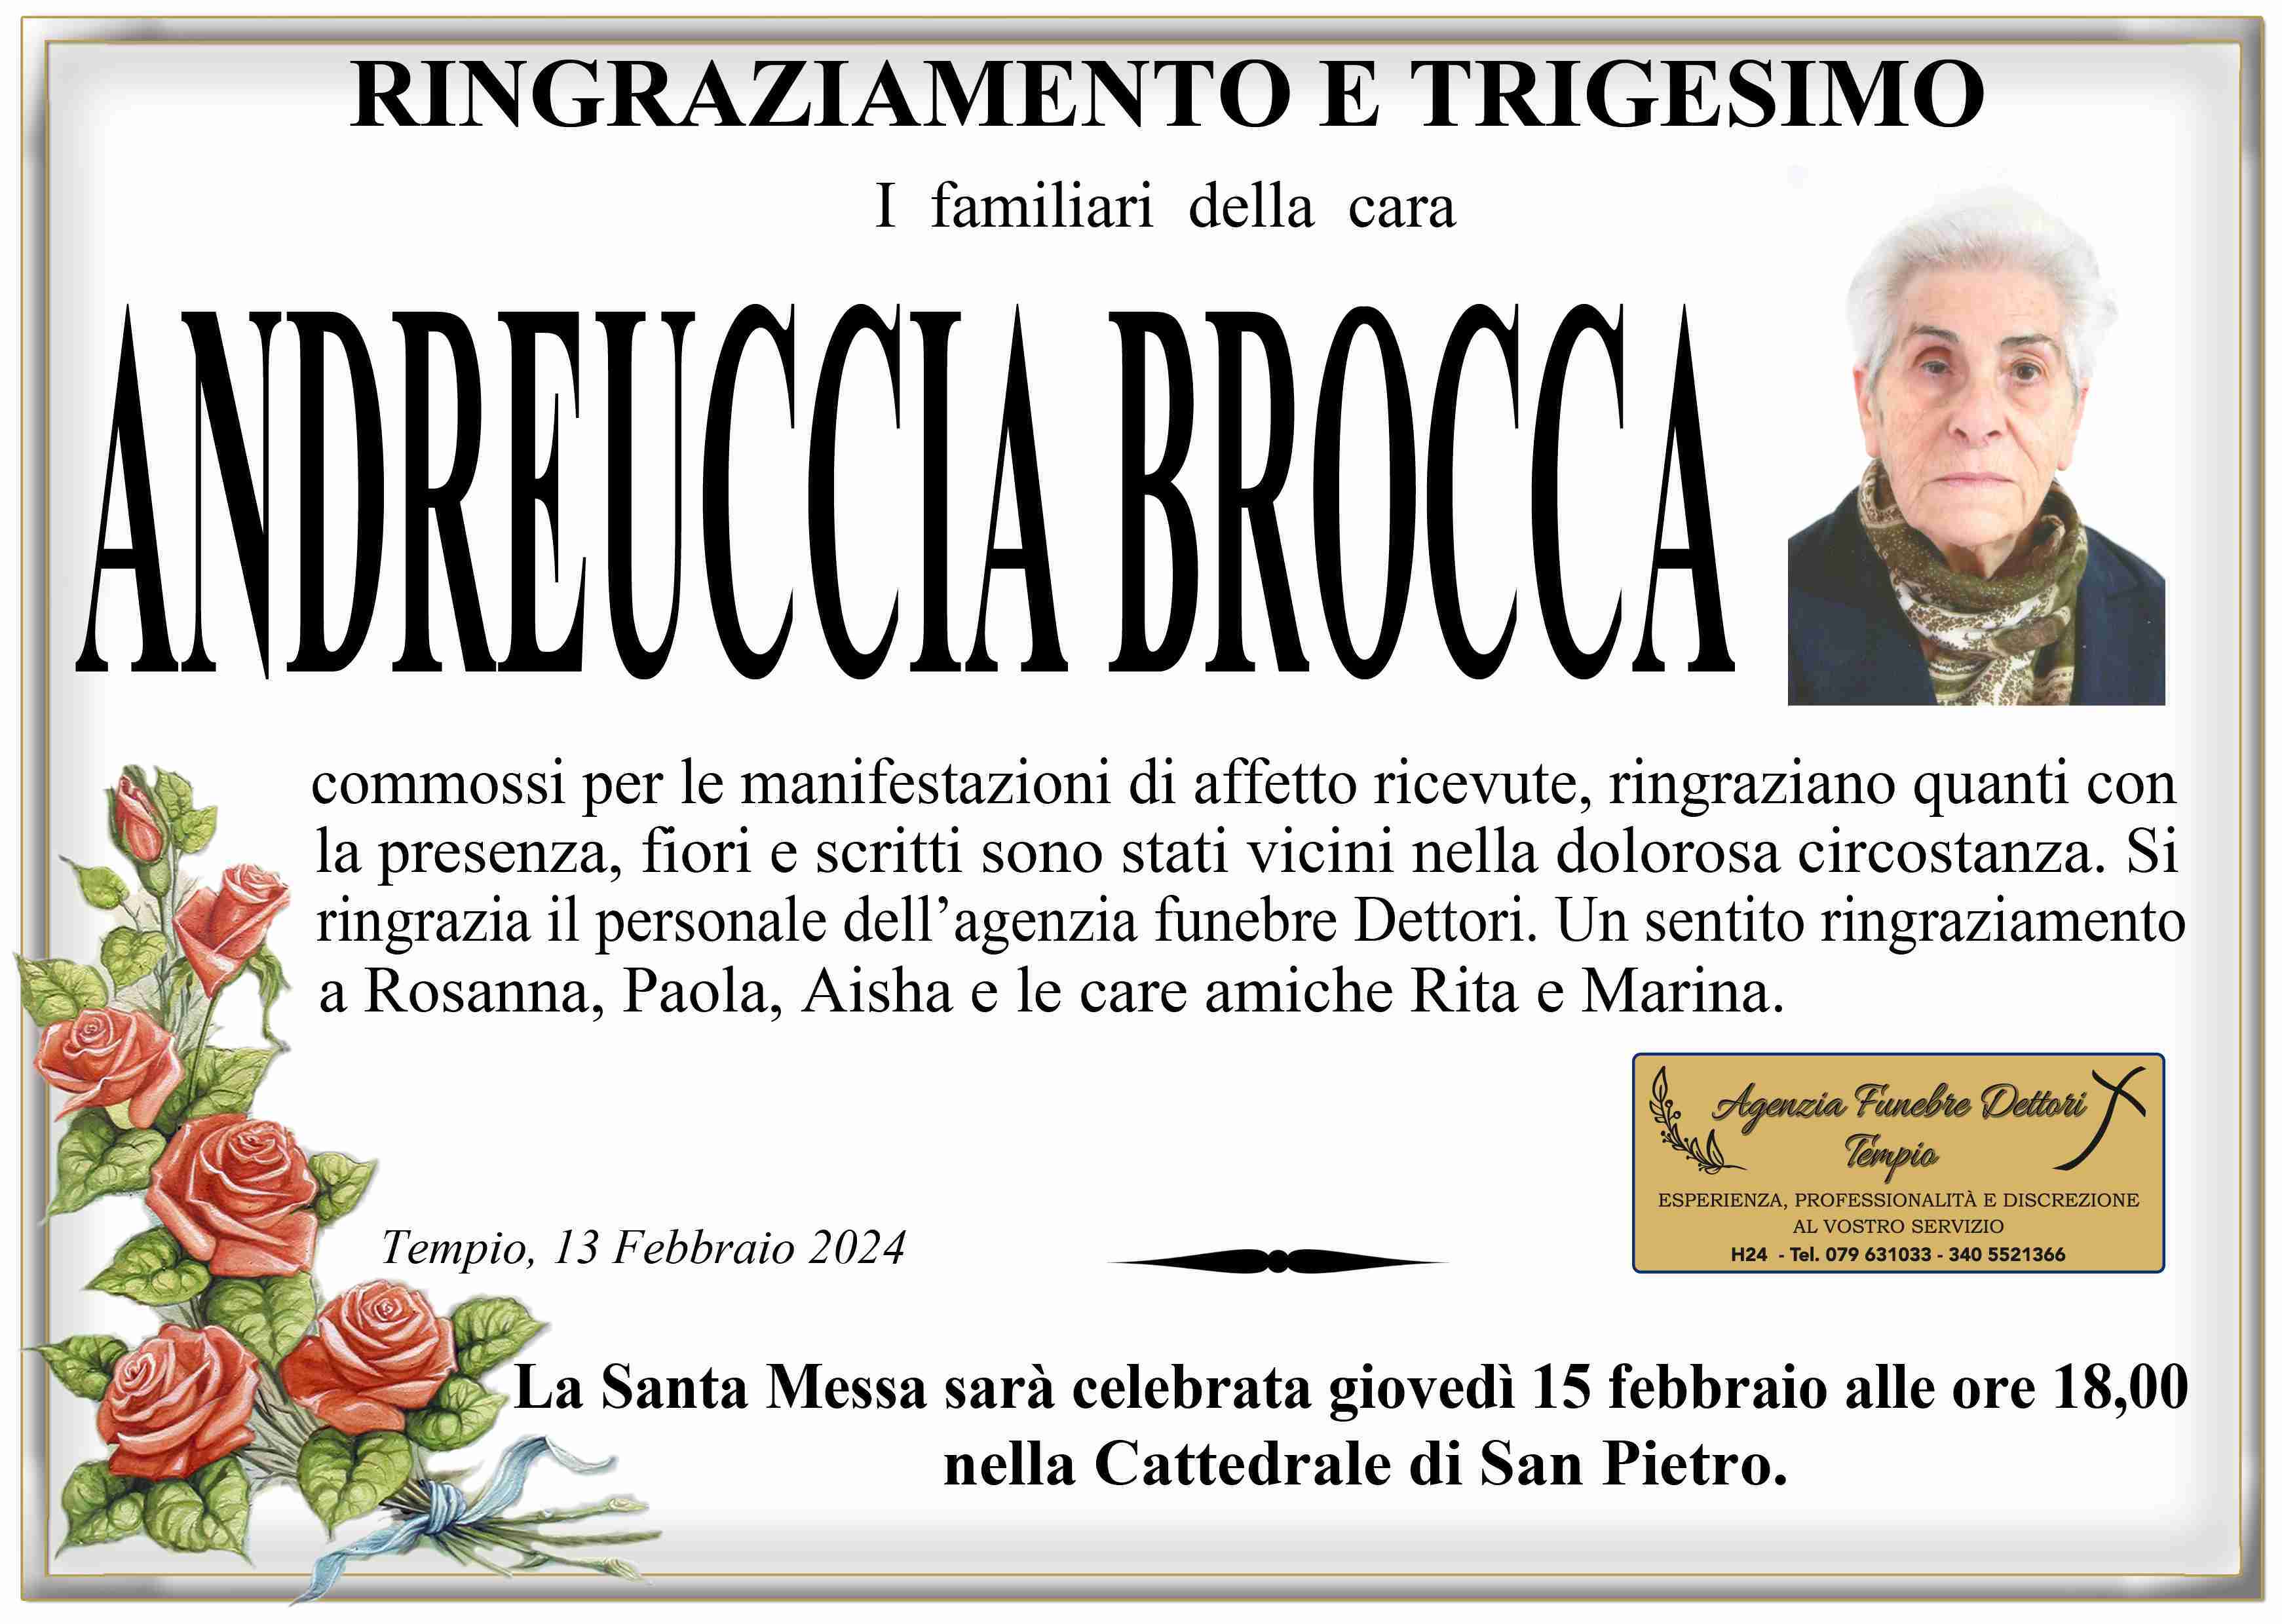 Andreuccia Brocca